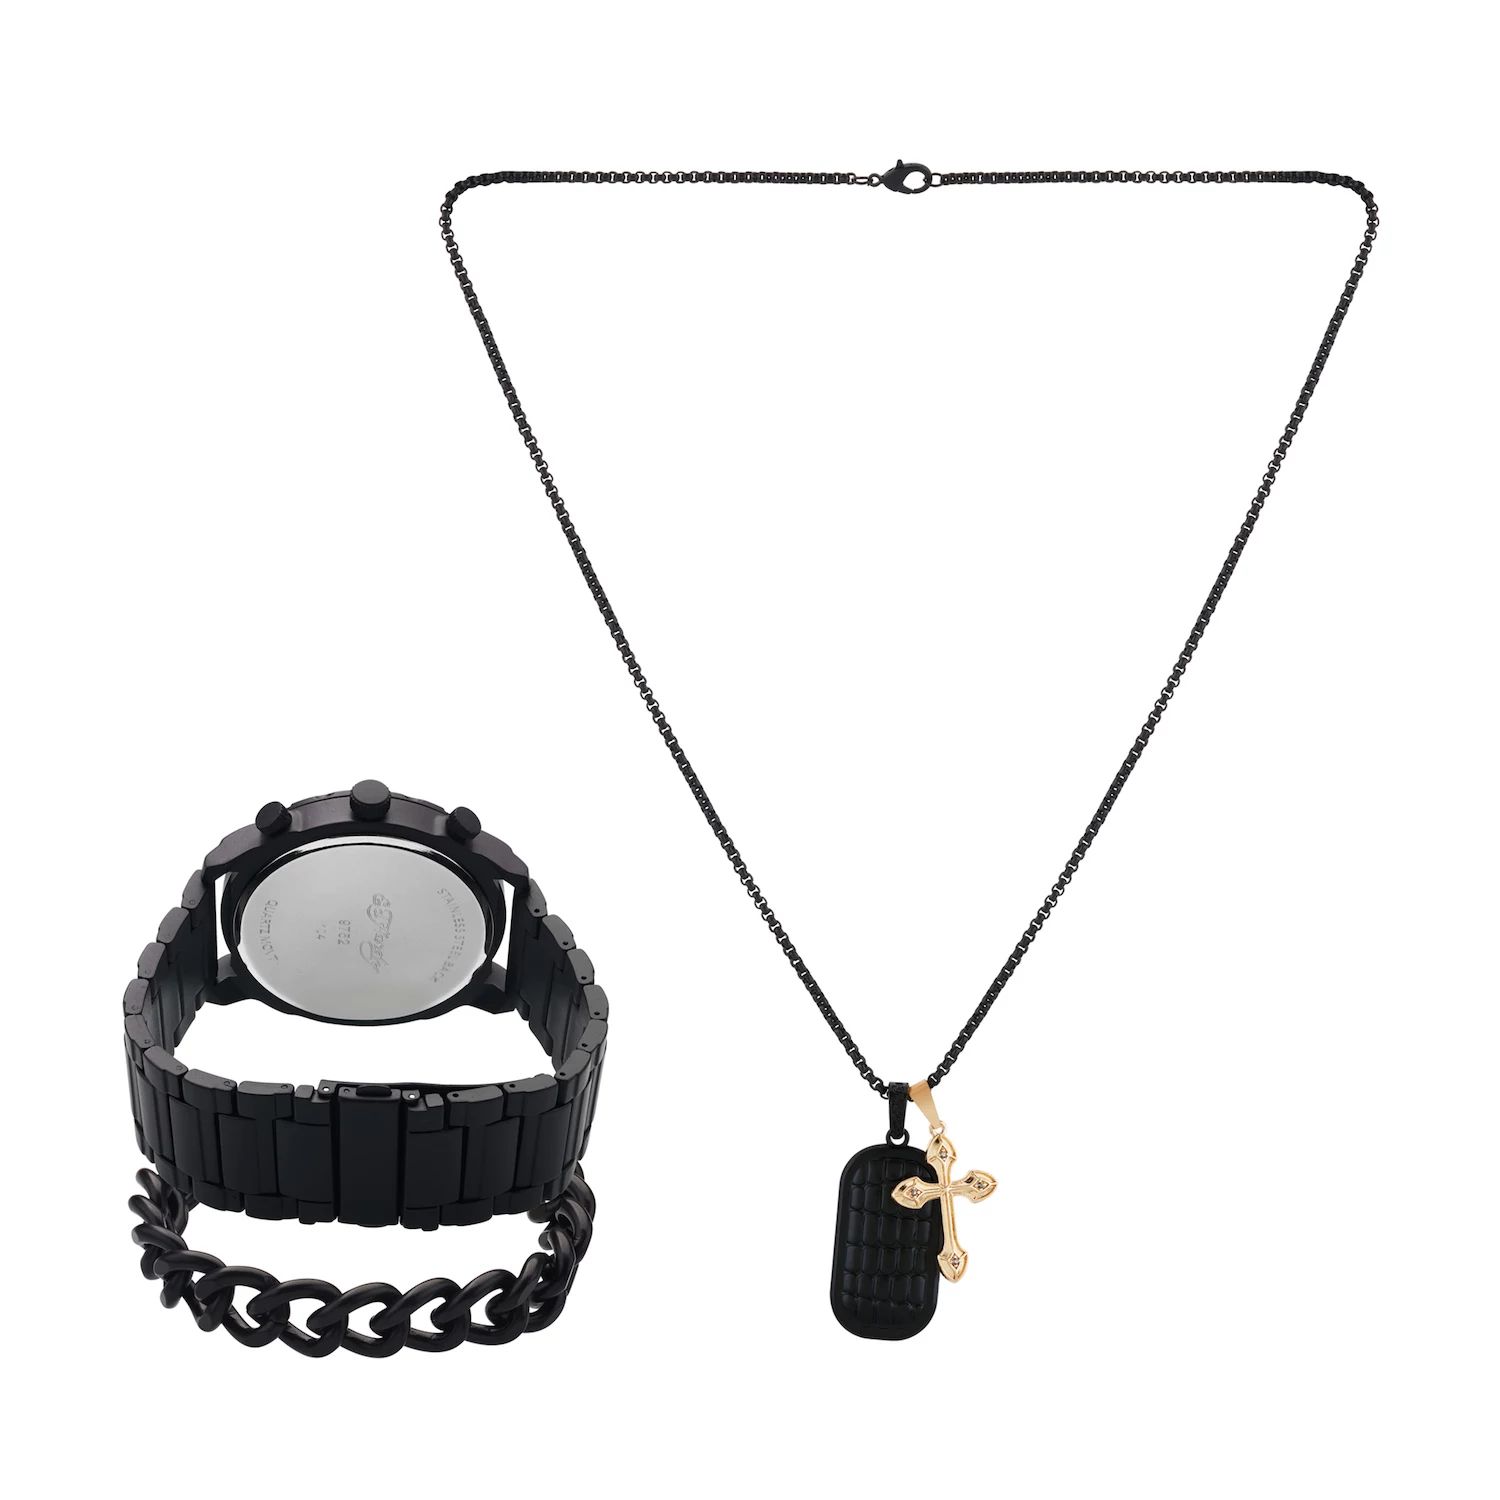 Подарочный набор из часов и ожерелья с черным металлическим браслетом 50 мм Ed Hardy кроссовки ed hardy scuff ed white lt leopard